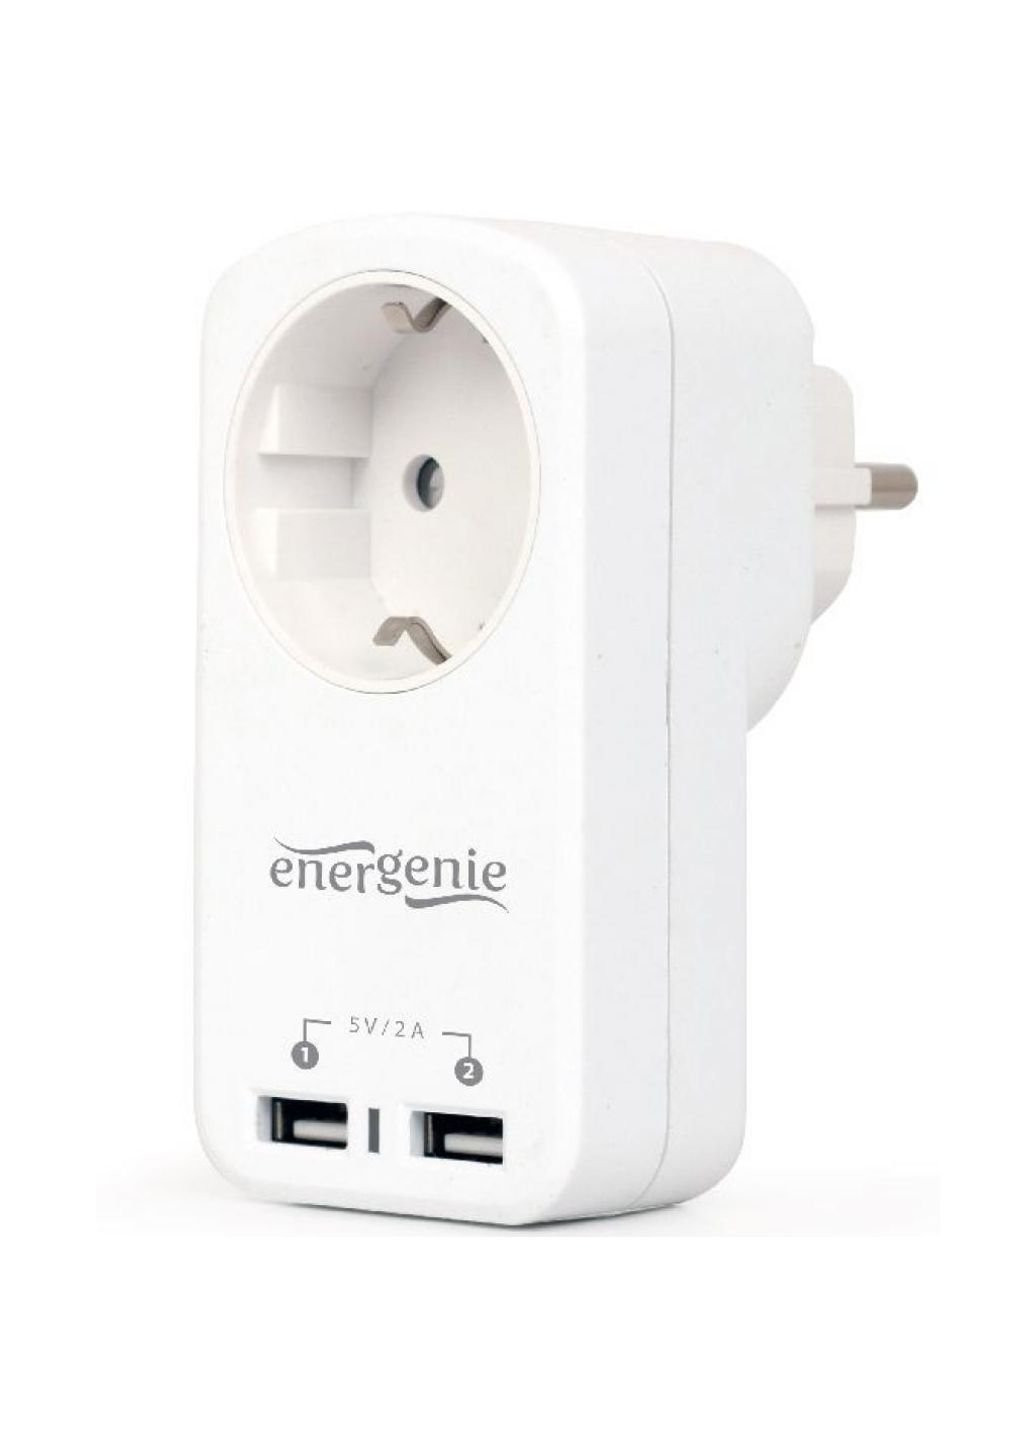 Зарядний пристрій 2 USB 2.1A з наскрізною розеткою (EG-ACU2-01-W) EnerGenie 2 usb по 2.1a со сквозной розеткой (253507321)